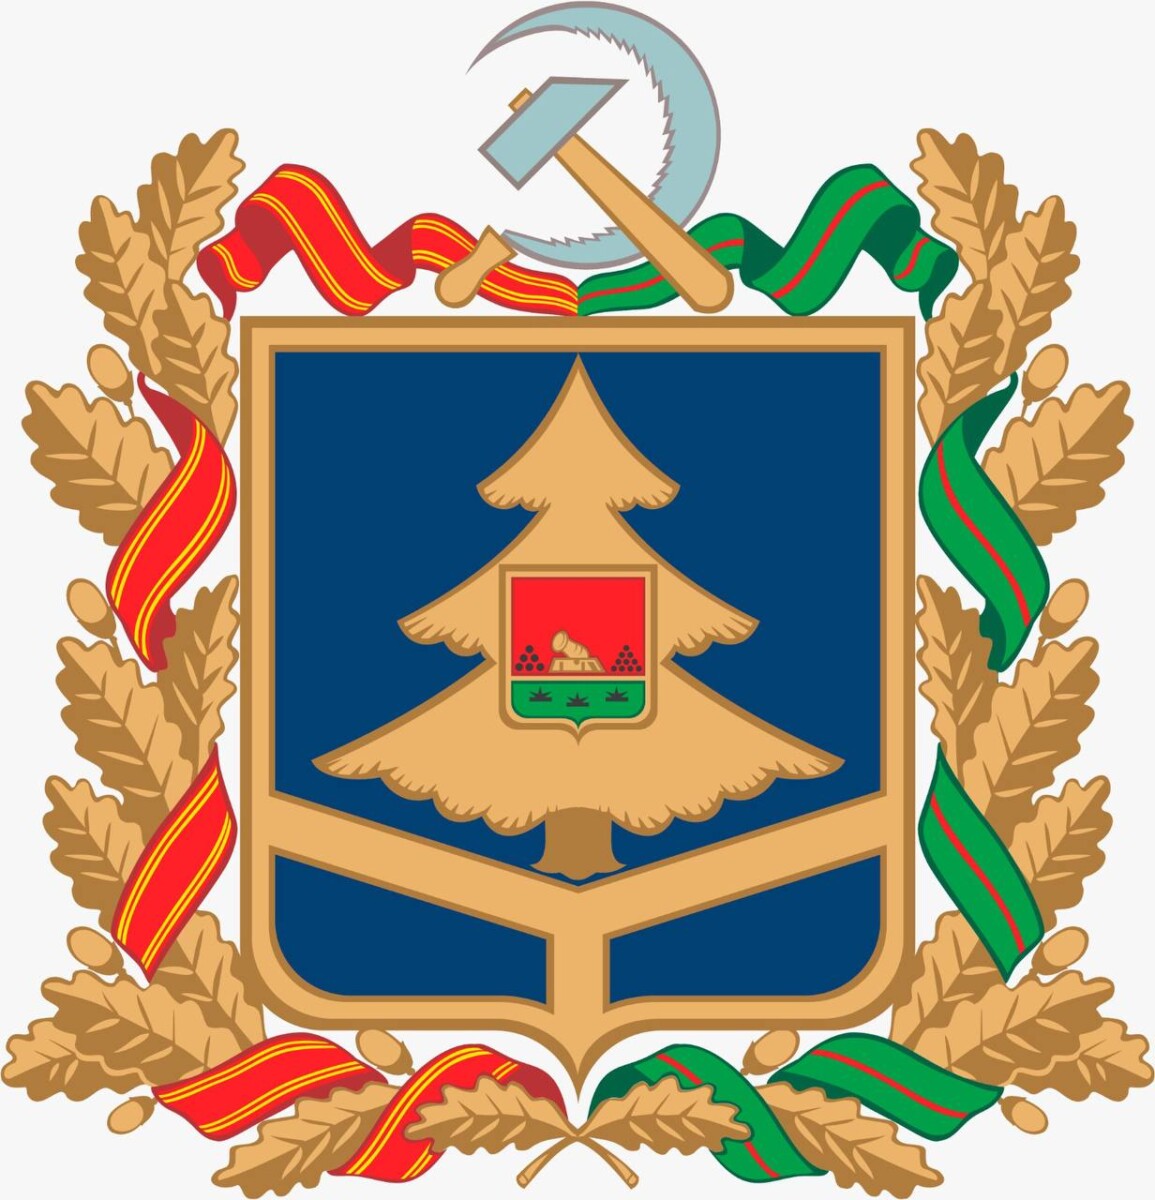 25 лет назад утвержден закон о символах Брянской области – гербе, флаге и гимне